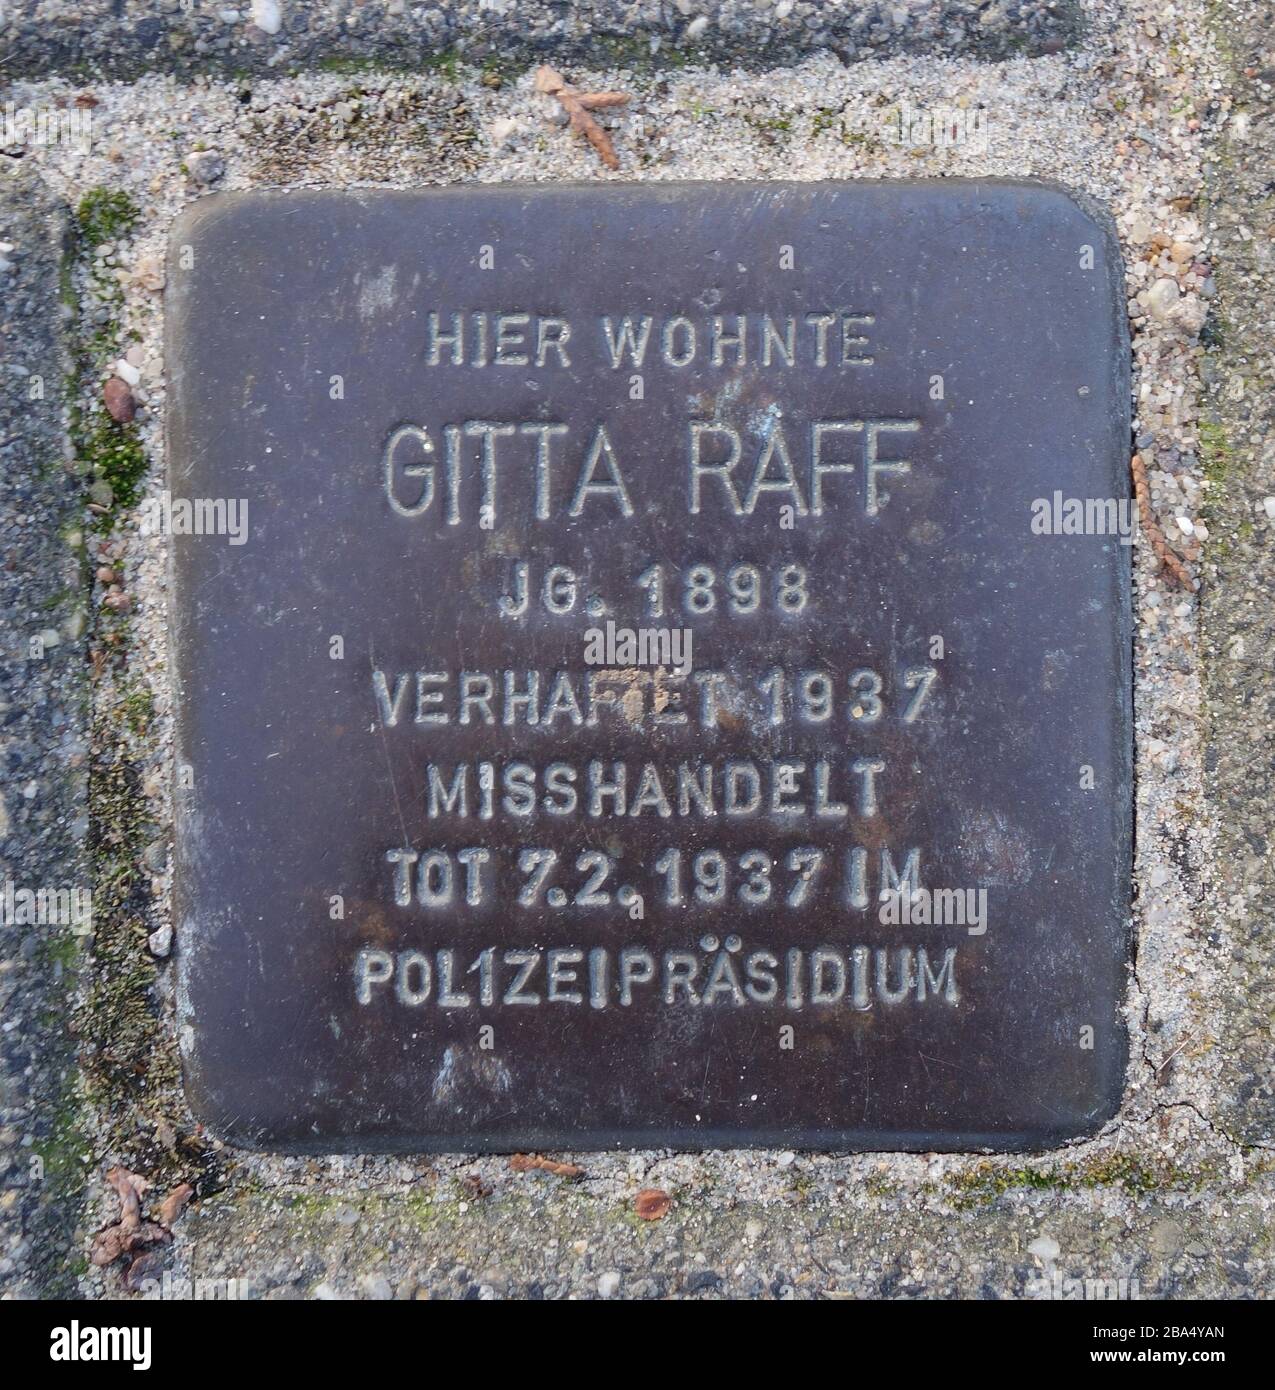 'DEUTSCH: Stolperstein Gitta Raff, Düsseldorf, Artusstraße 48.; tomado el 25 de febrero de 2019, 10:59:14; Auto-fotografiado; Kürschner (charla) 11:21, 25 de febrero de 2019 (UTC); ' Foto de stock